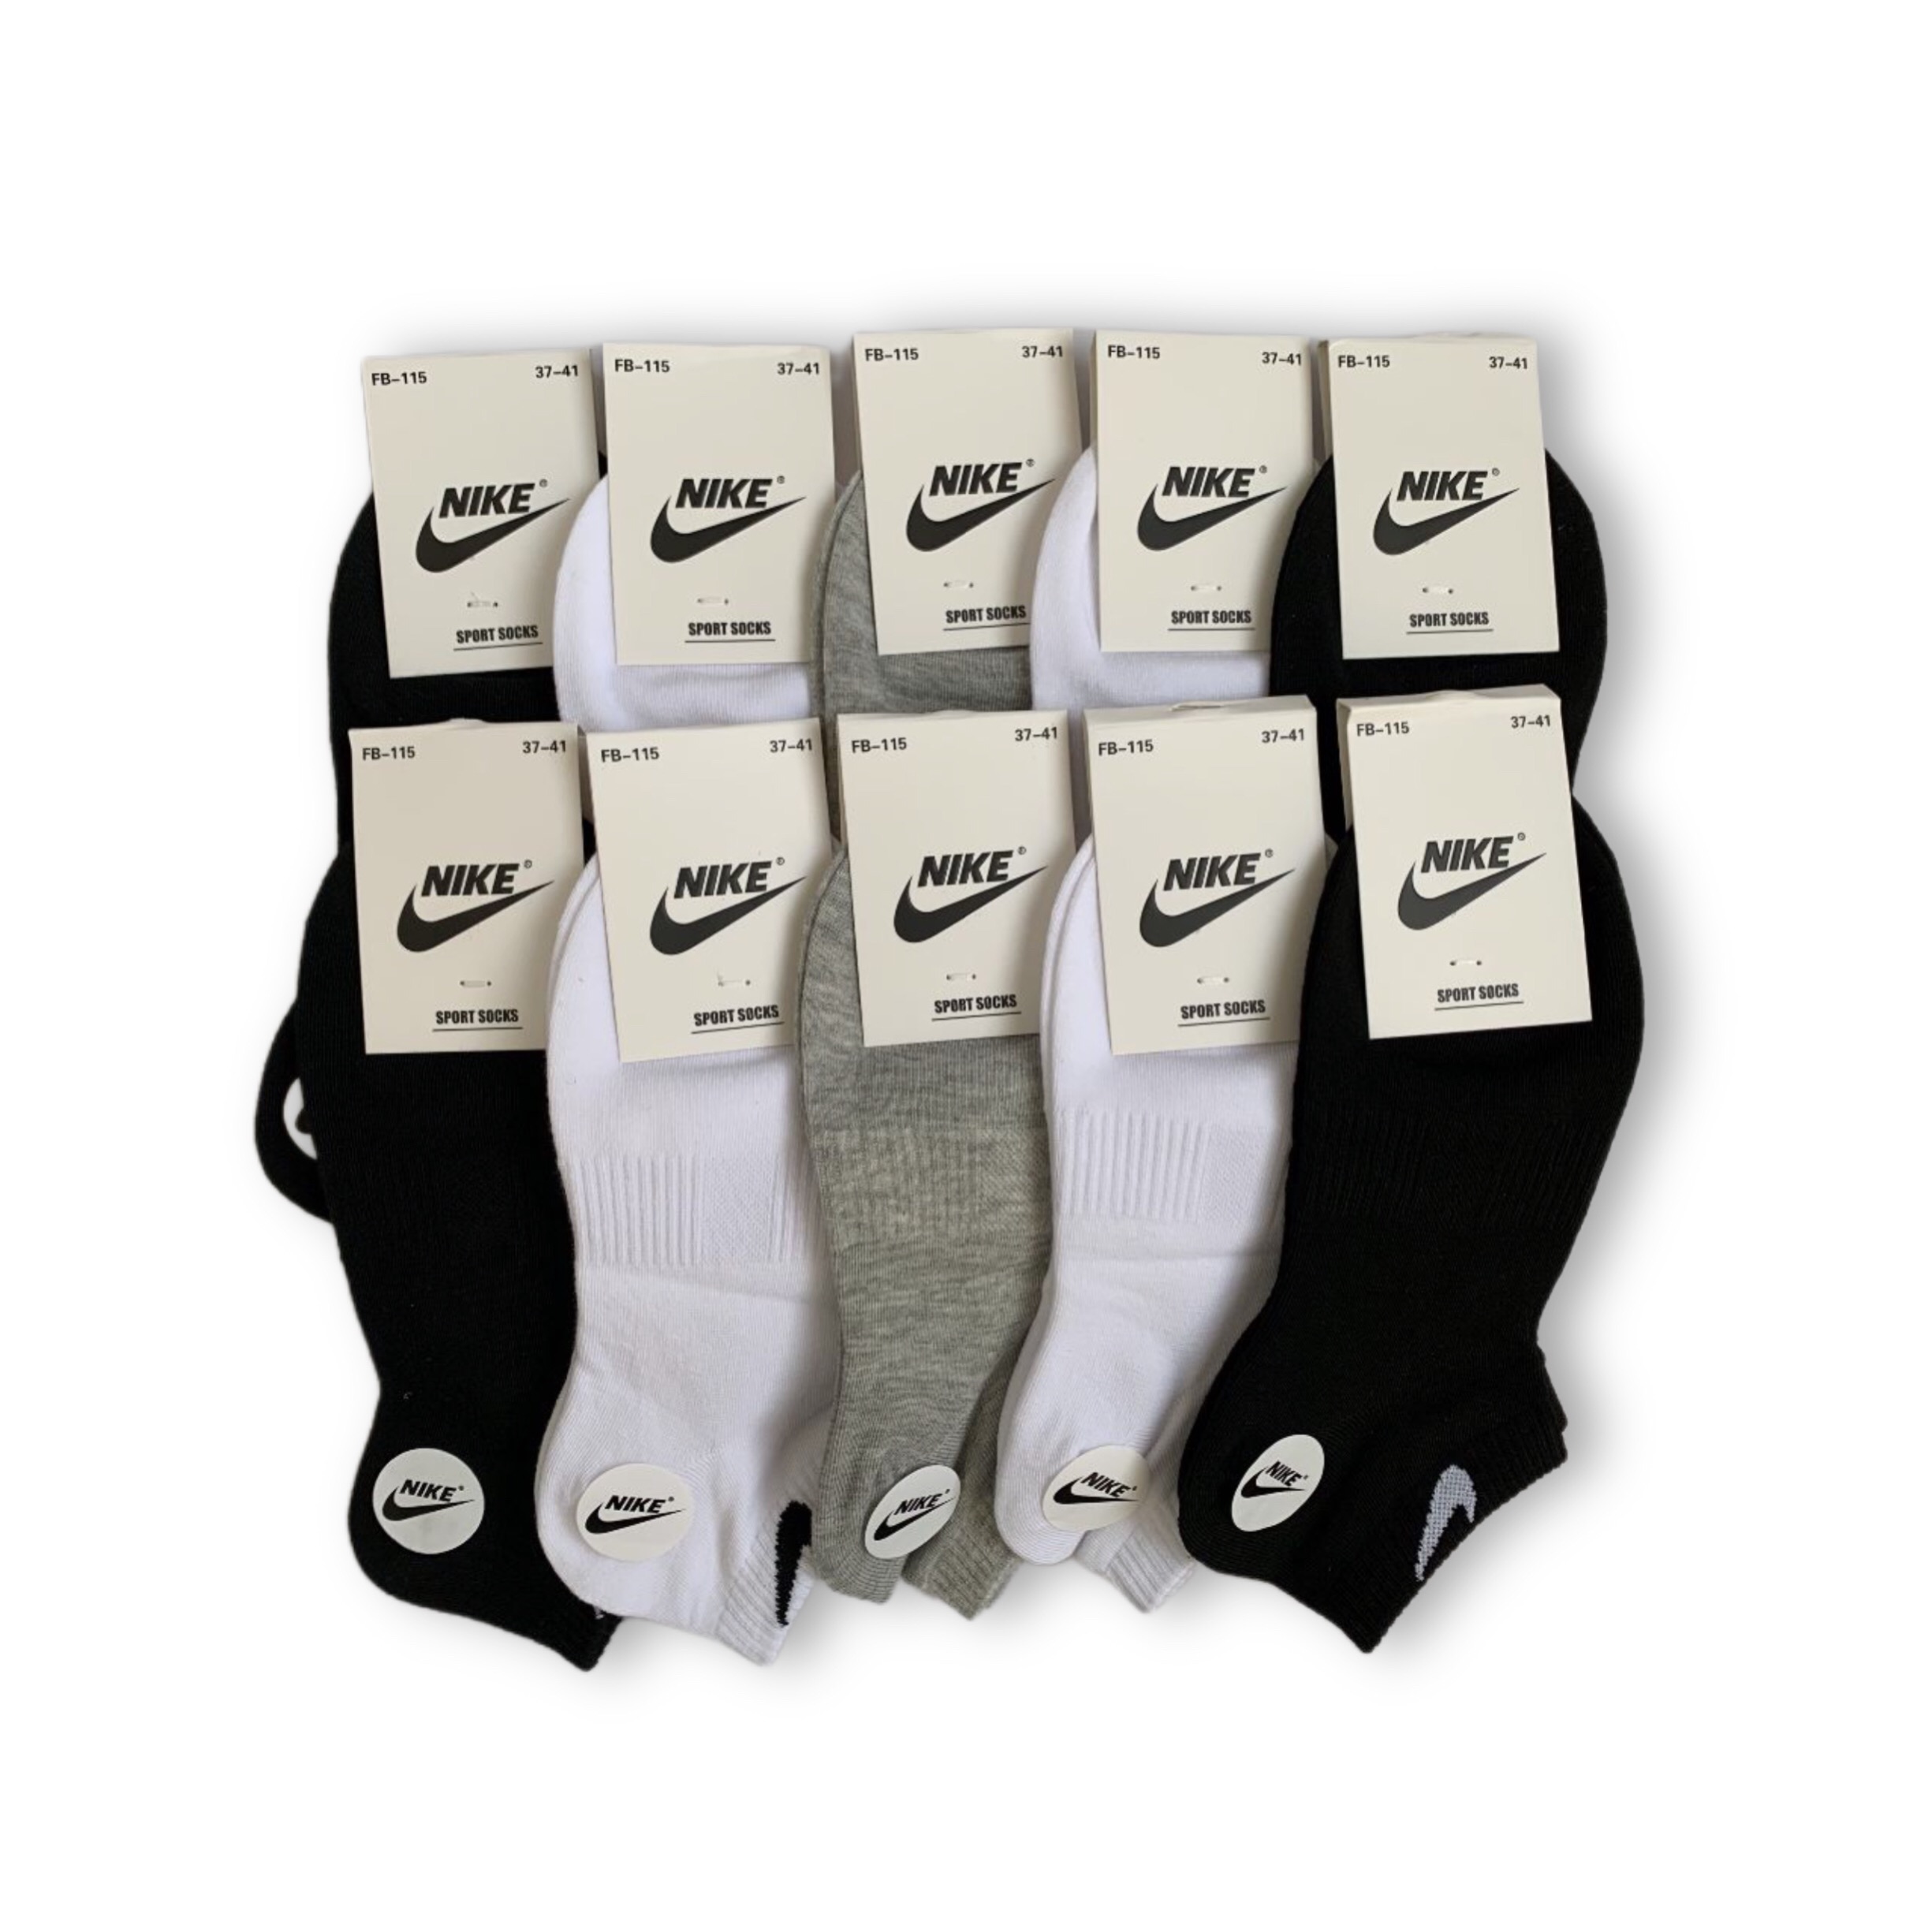 Комплект носков женских Nike 323 в ассортименте 36-41